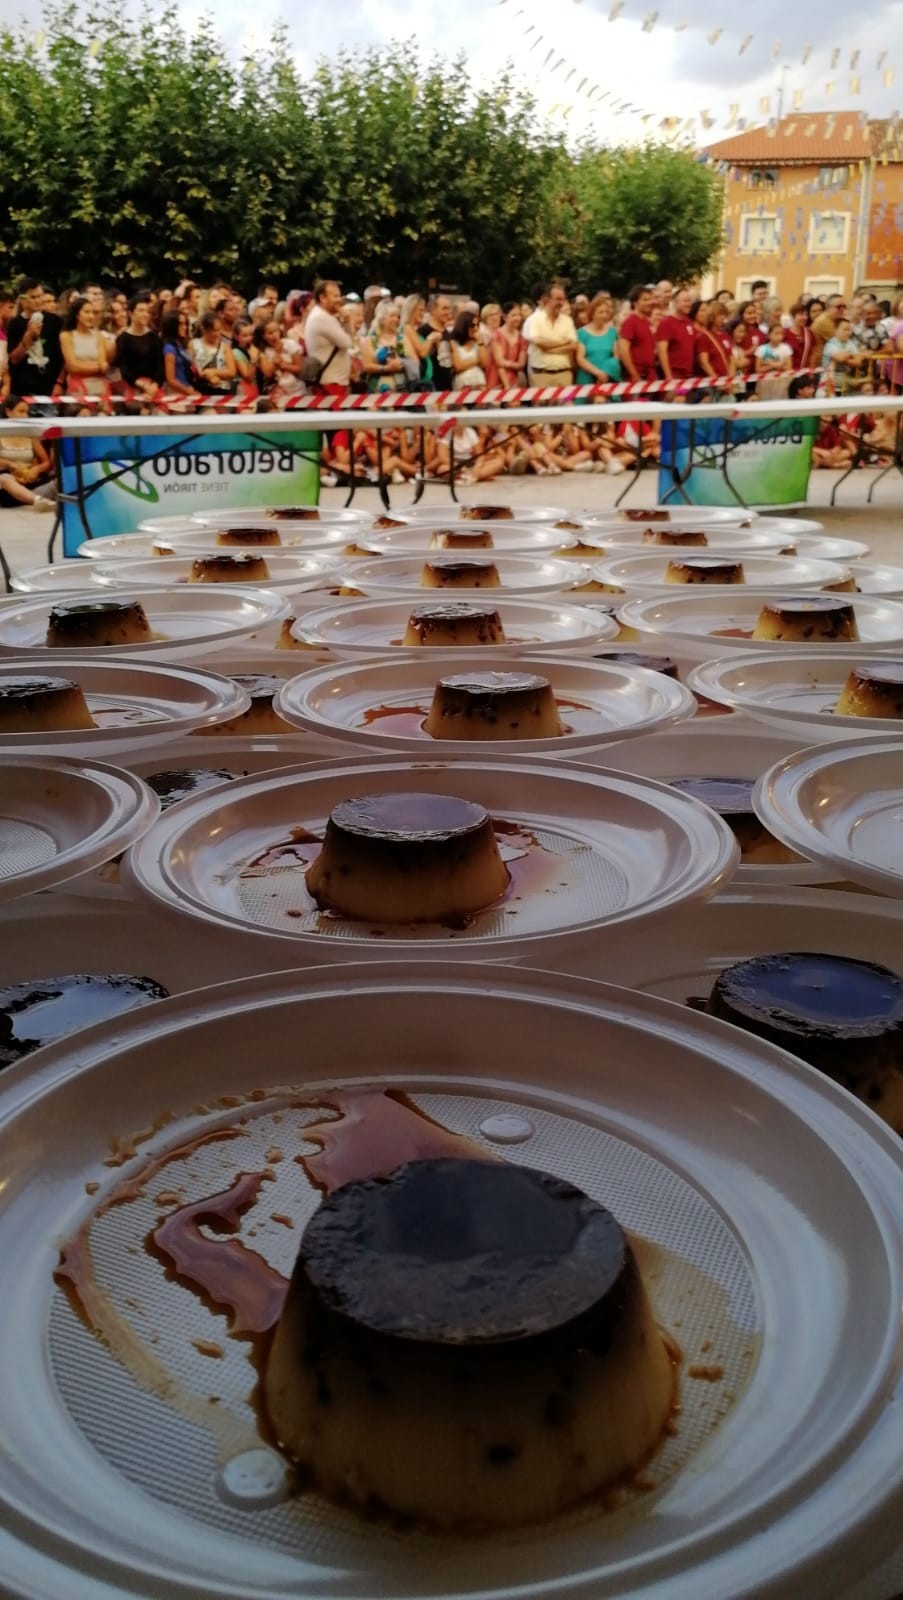 Belorado buscará el récord Guinness de succión de flanes 